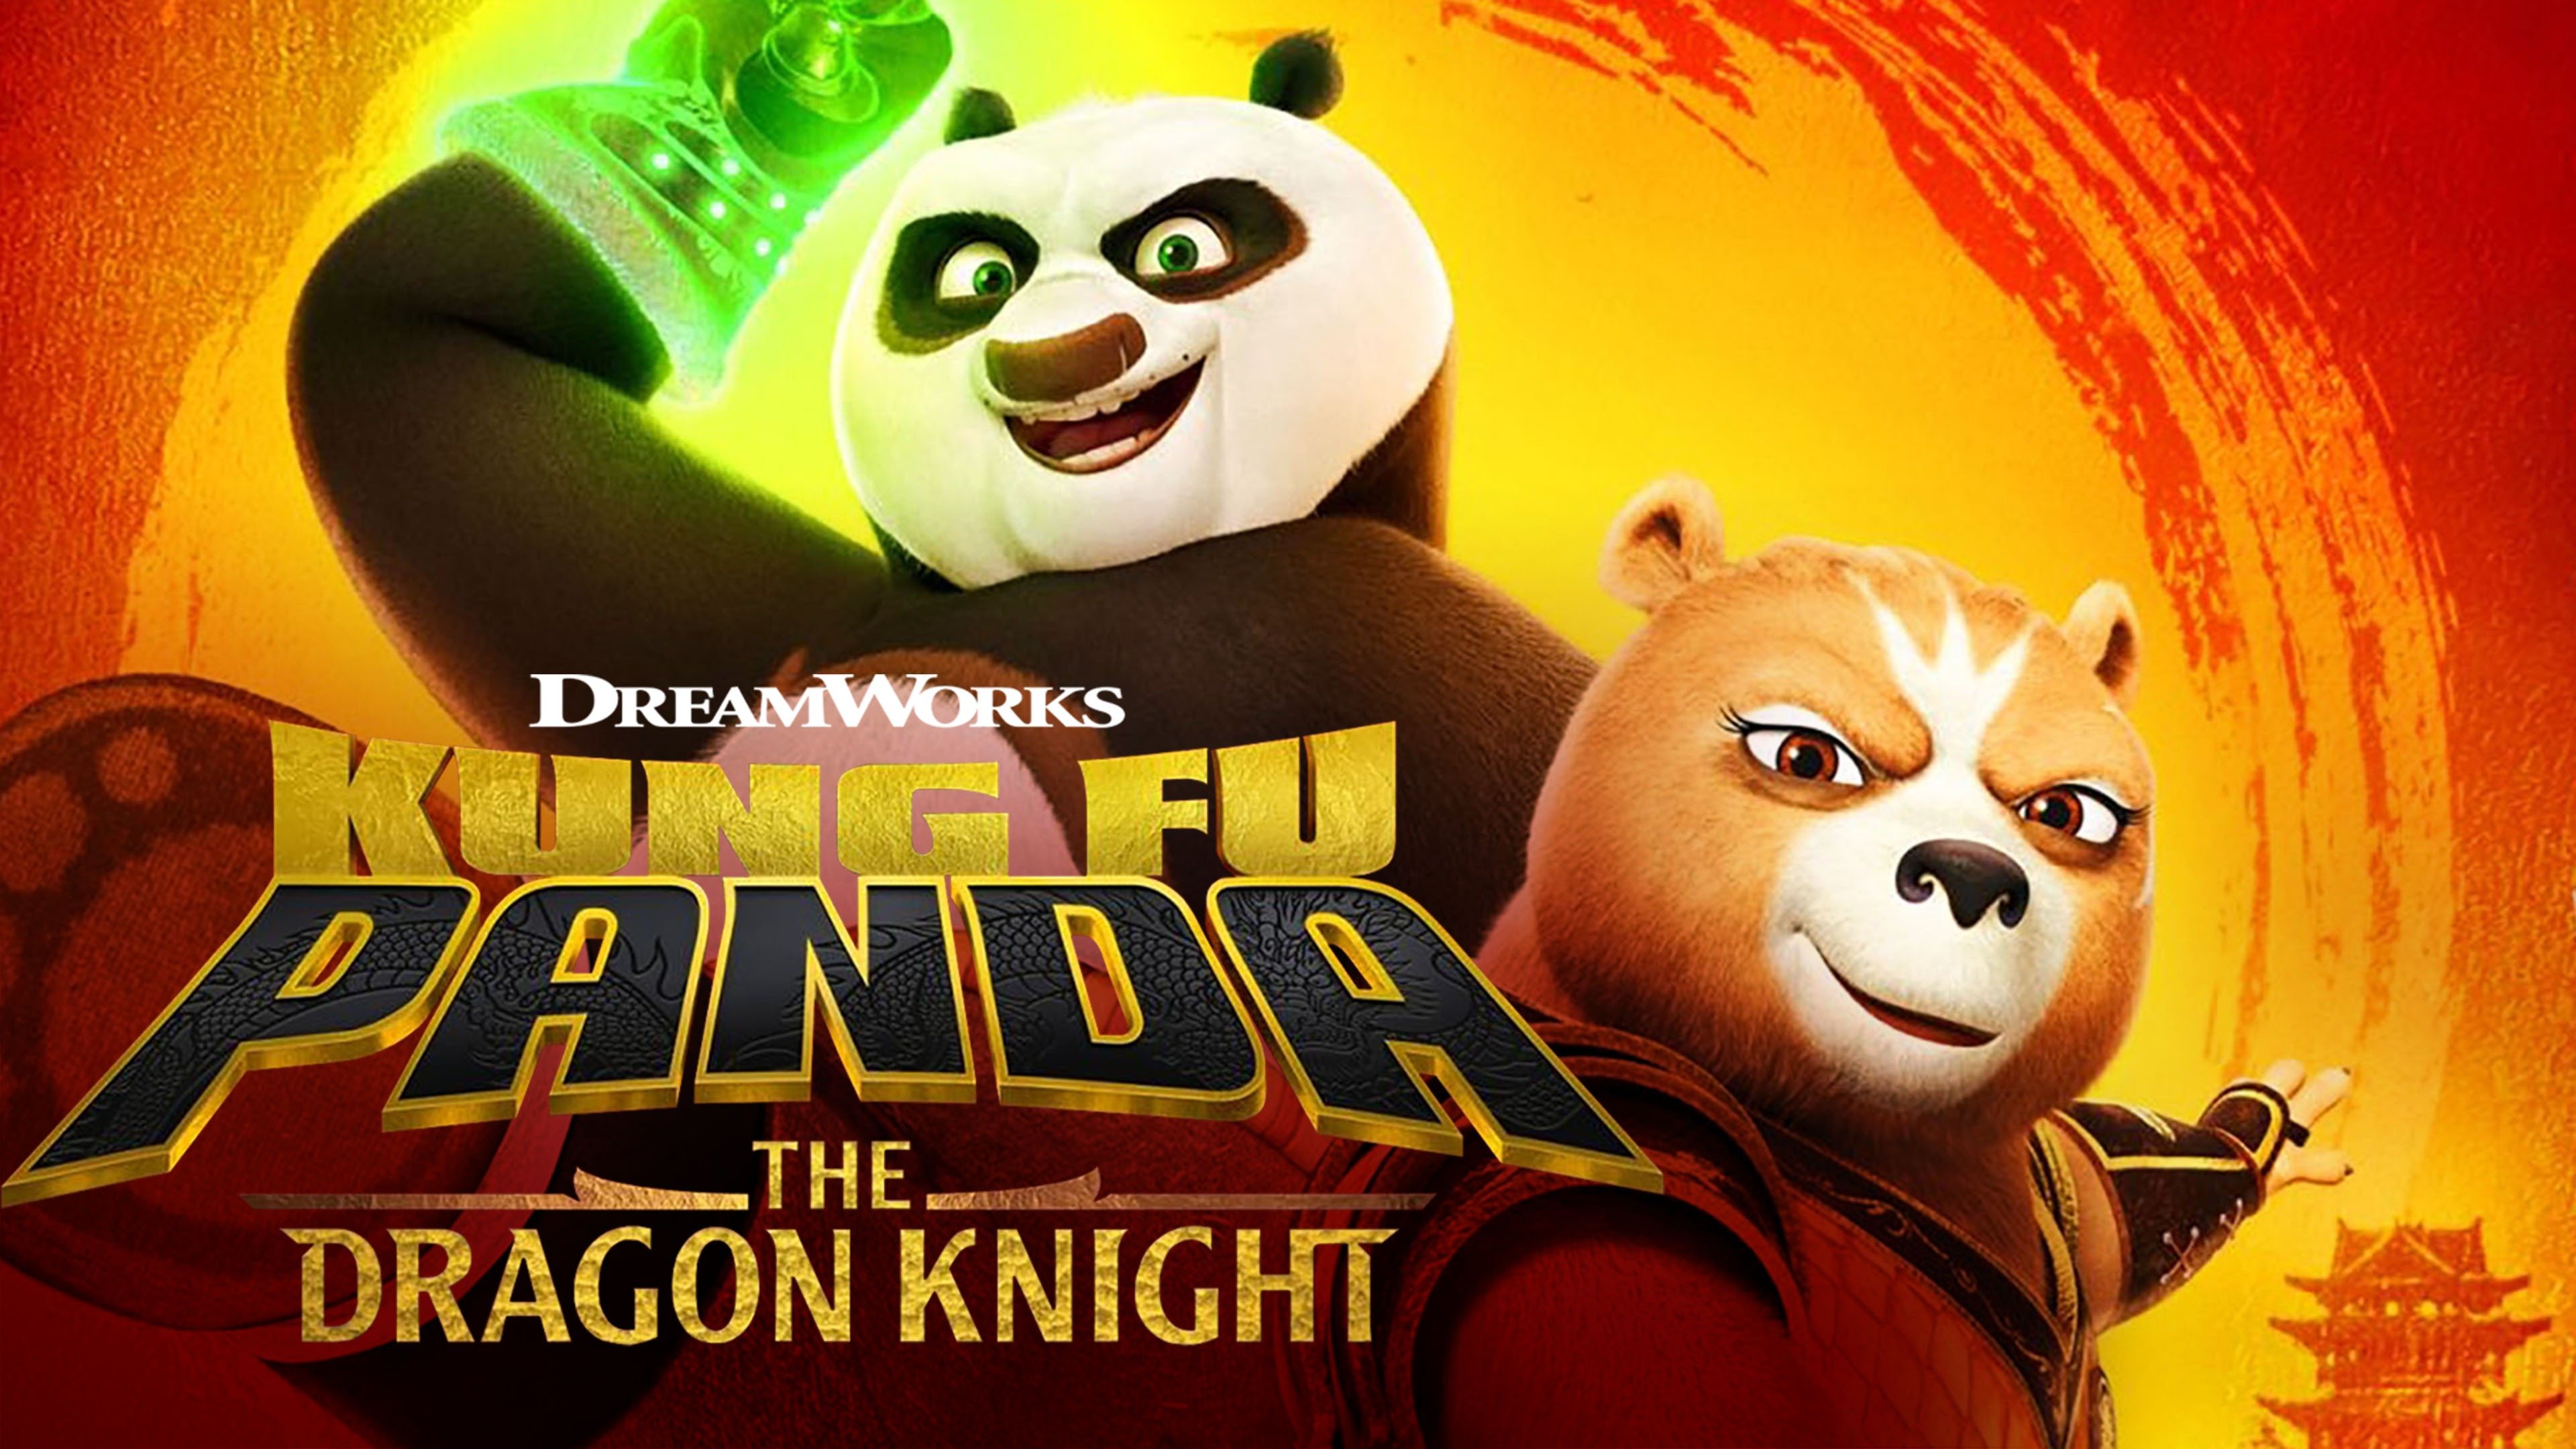 功夫熊猫英文版 第6季《Kung Fu Panda》在线观看